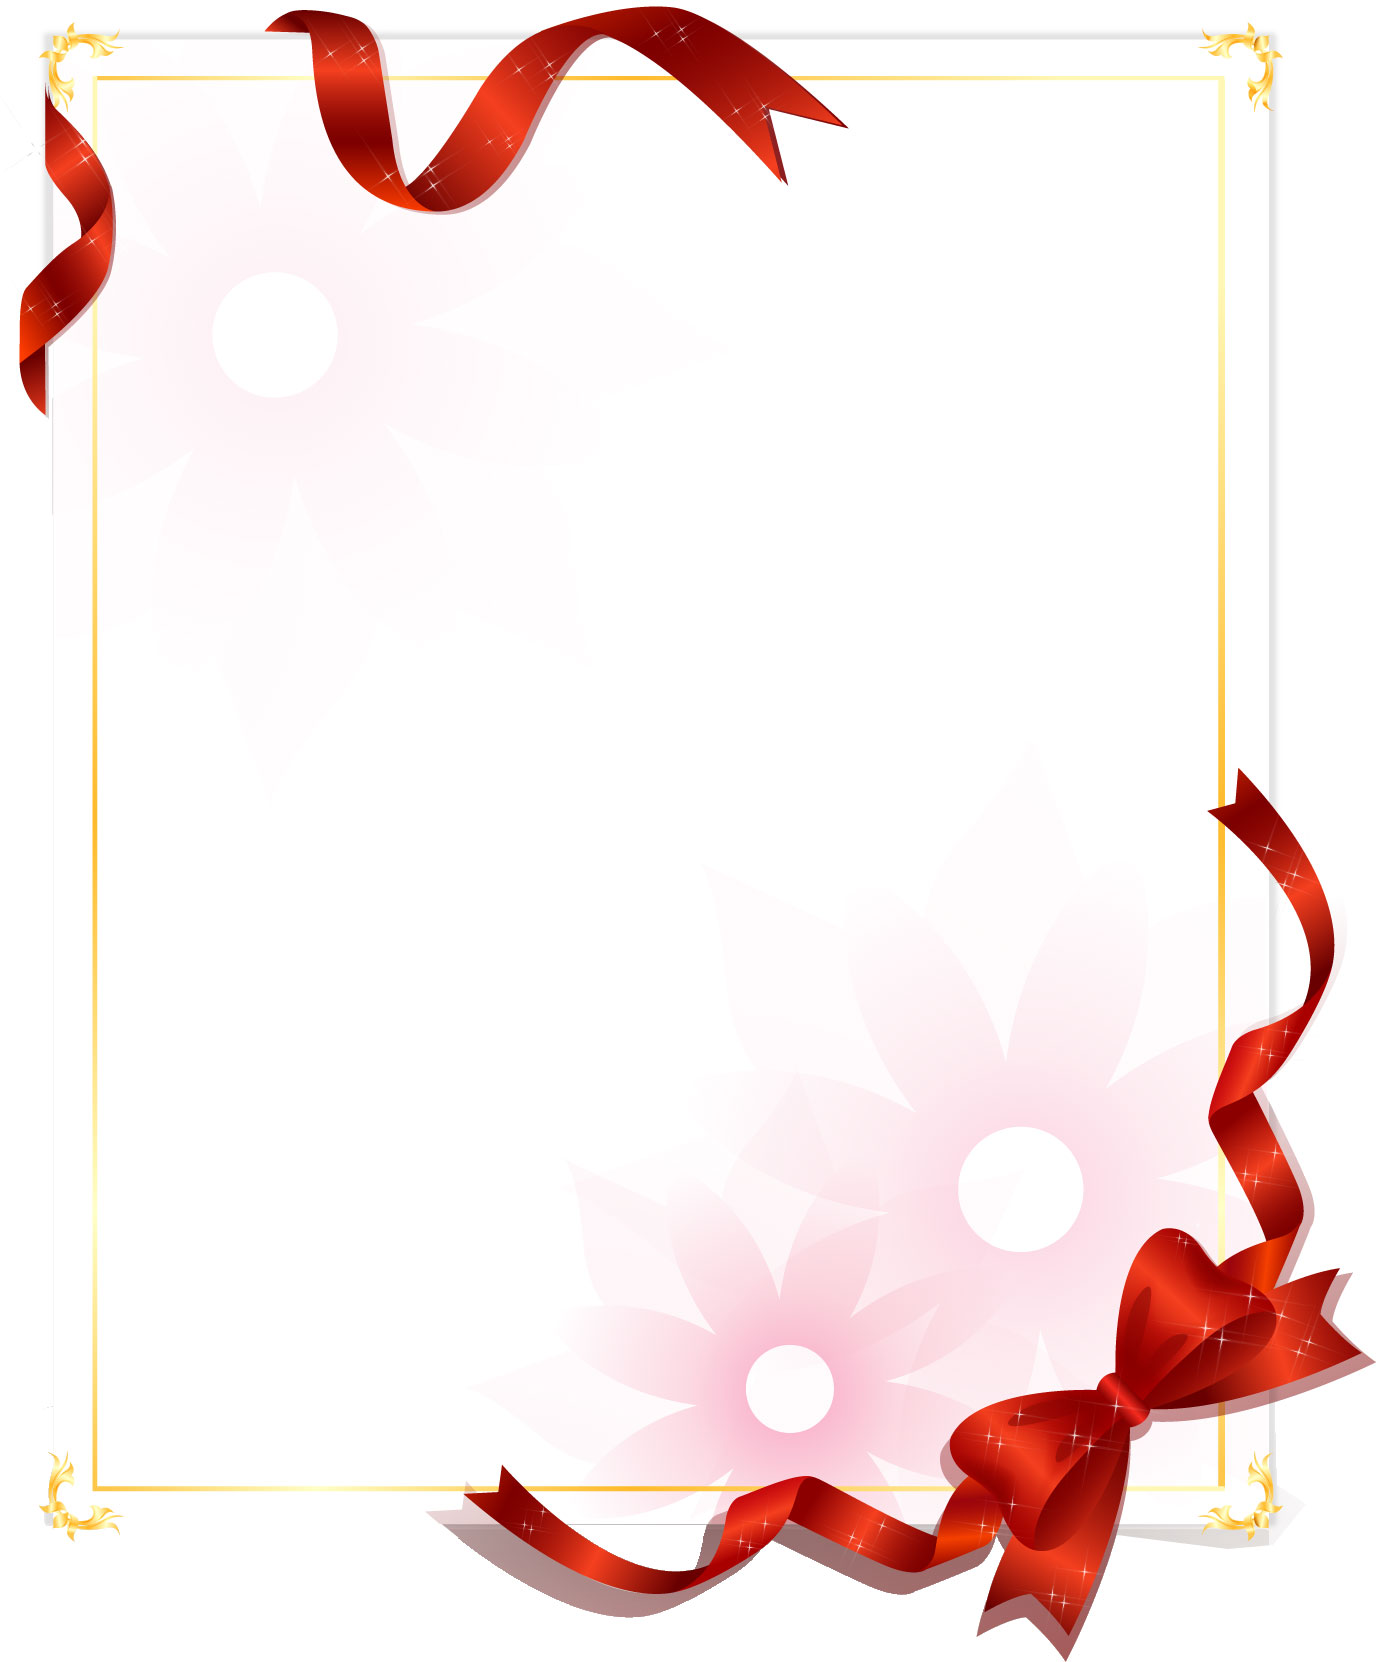 リボンのフレーム枠イラスト 無料素材no 081 赤いリボンと花柄